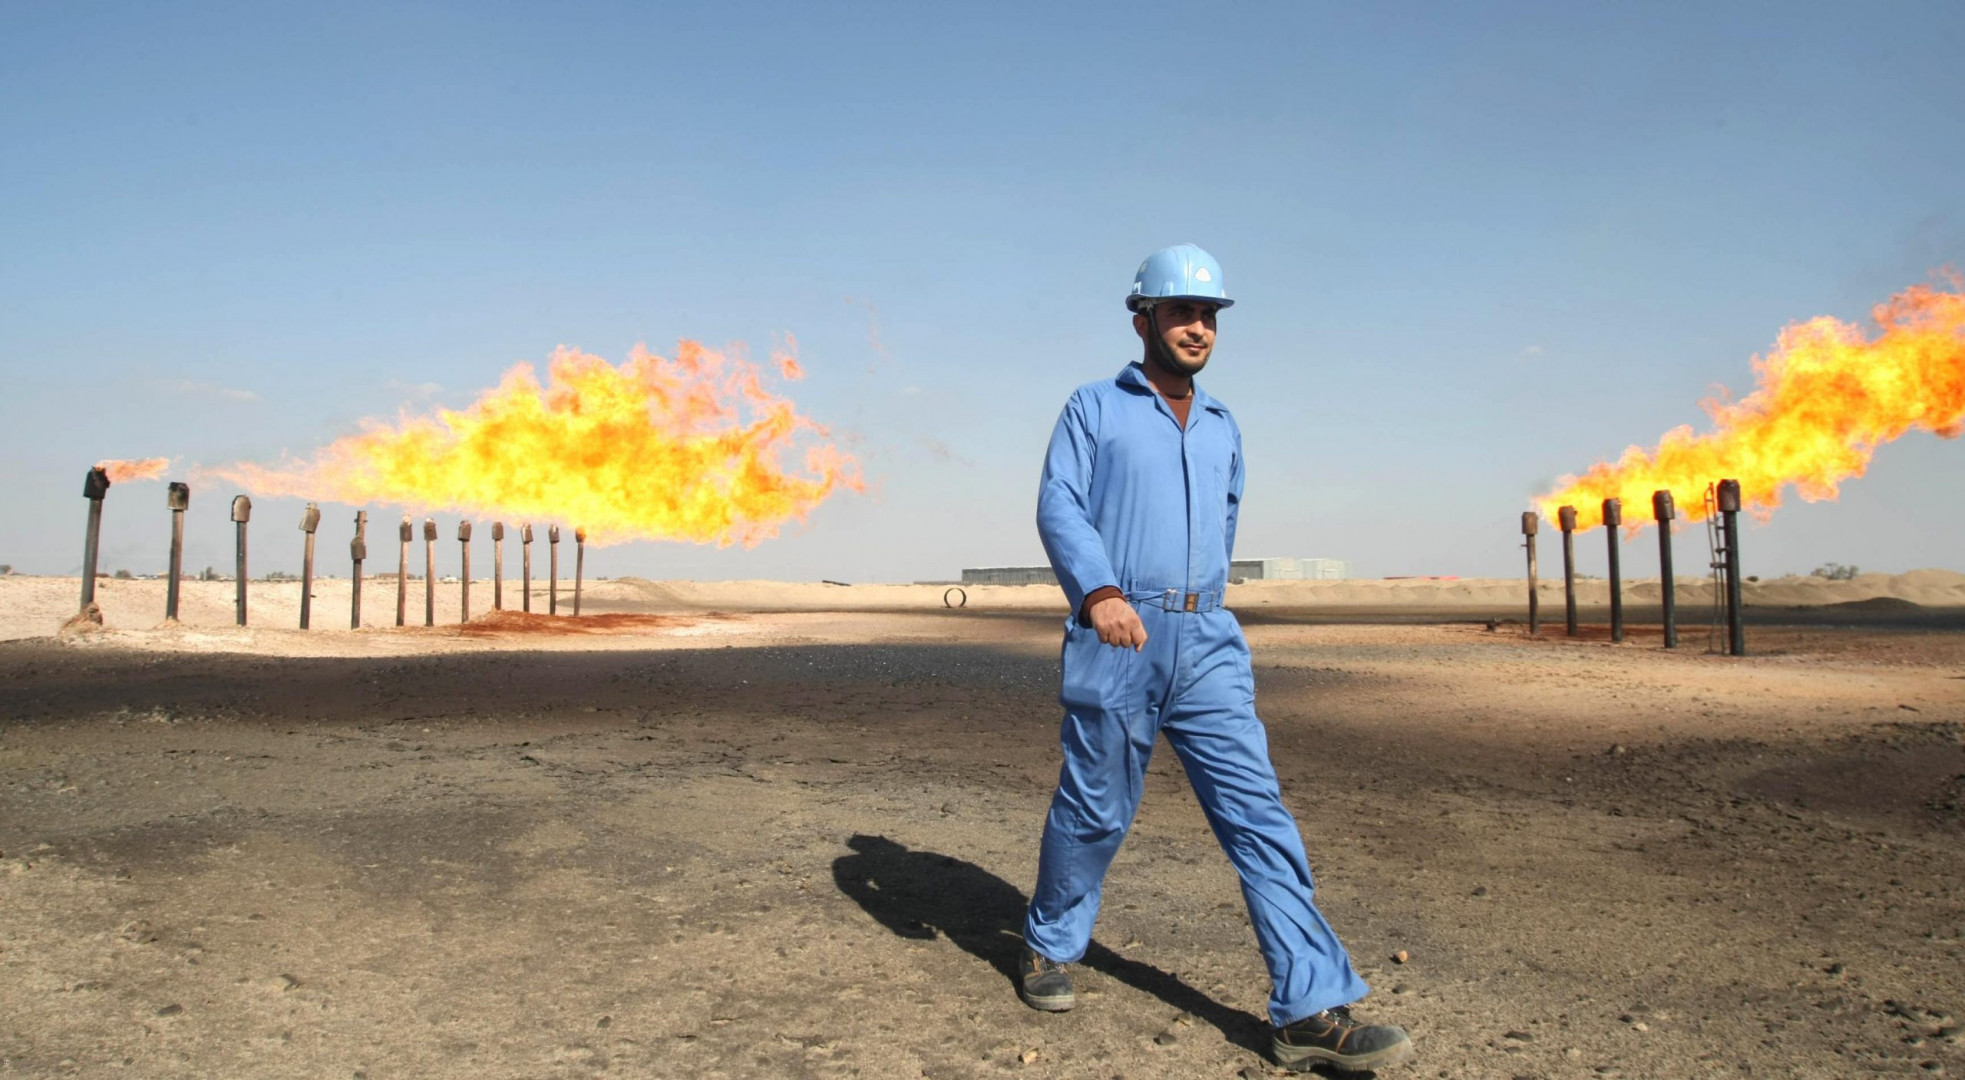 2381 مقمقا يومياً انتاج العراق من الغاز المصاحب خلال شهر